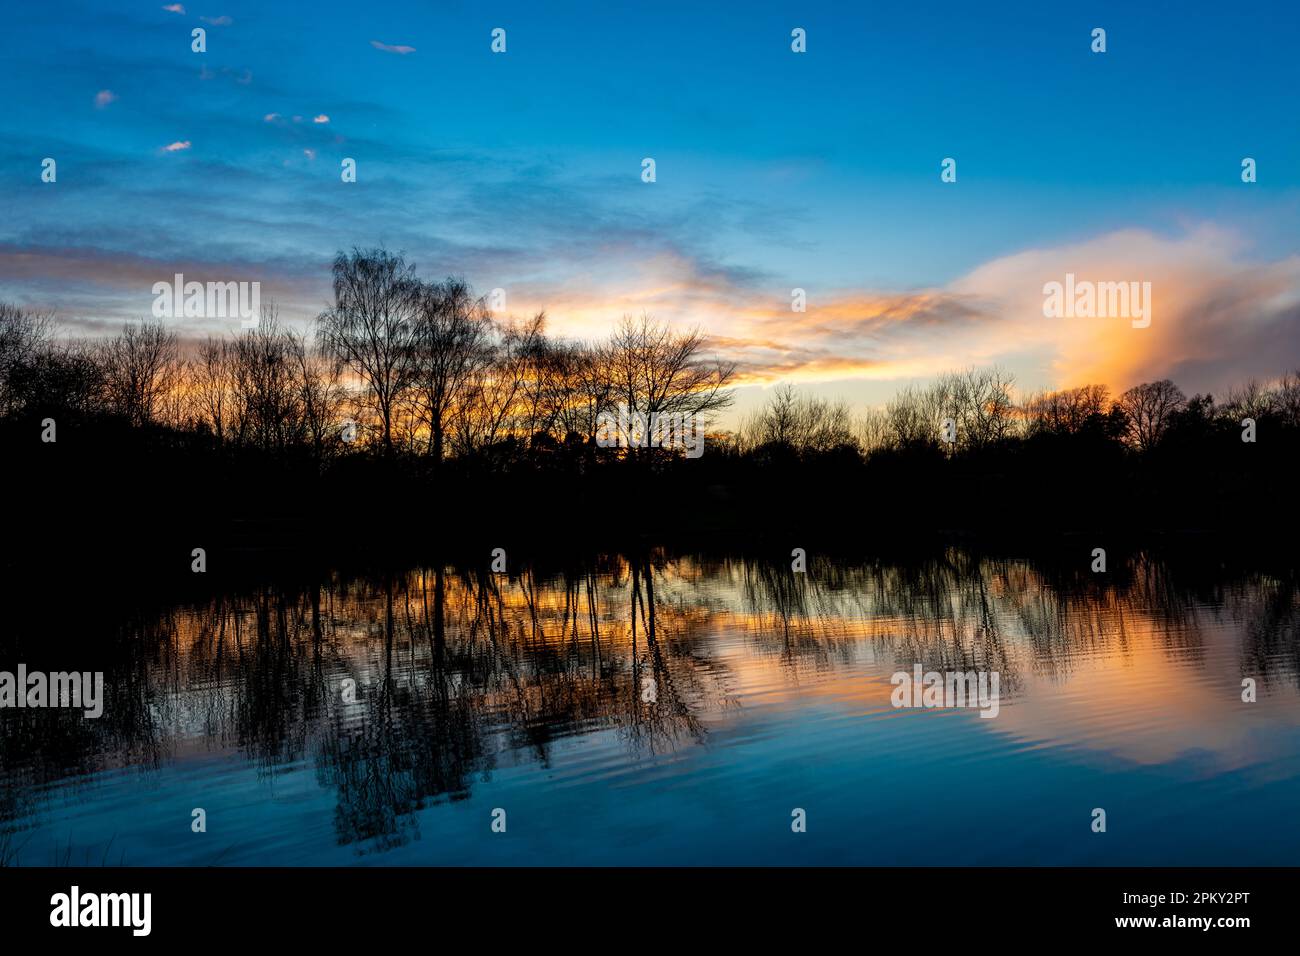 Coucher de soleil d'hiver sur un petit lac de pêche Bulwell Hall Park Nottingham uk Banque D'Images